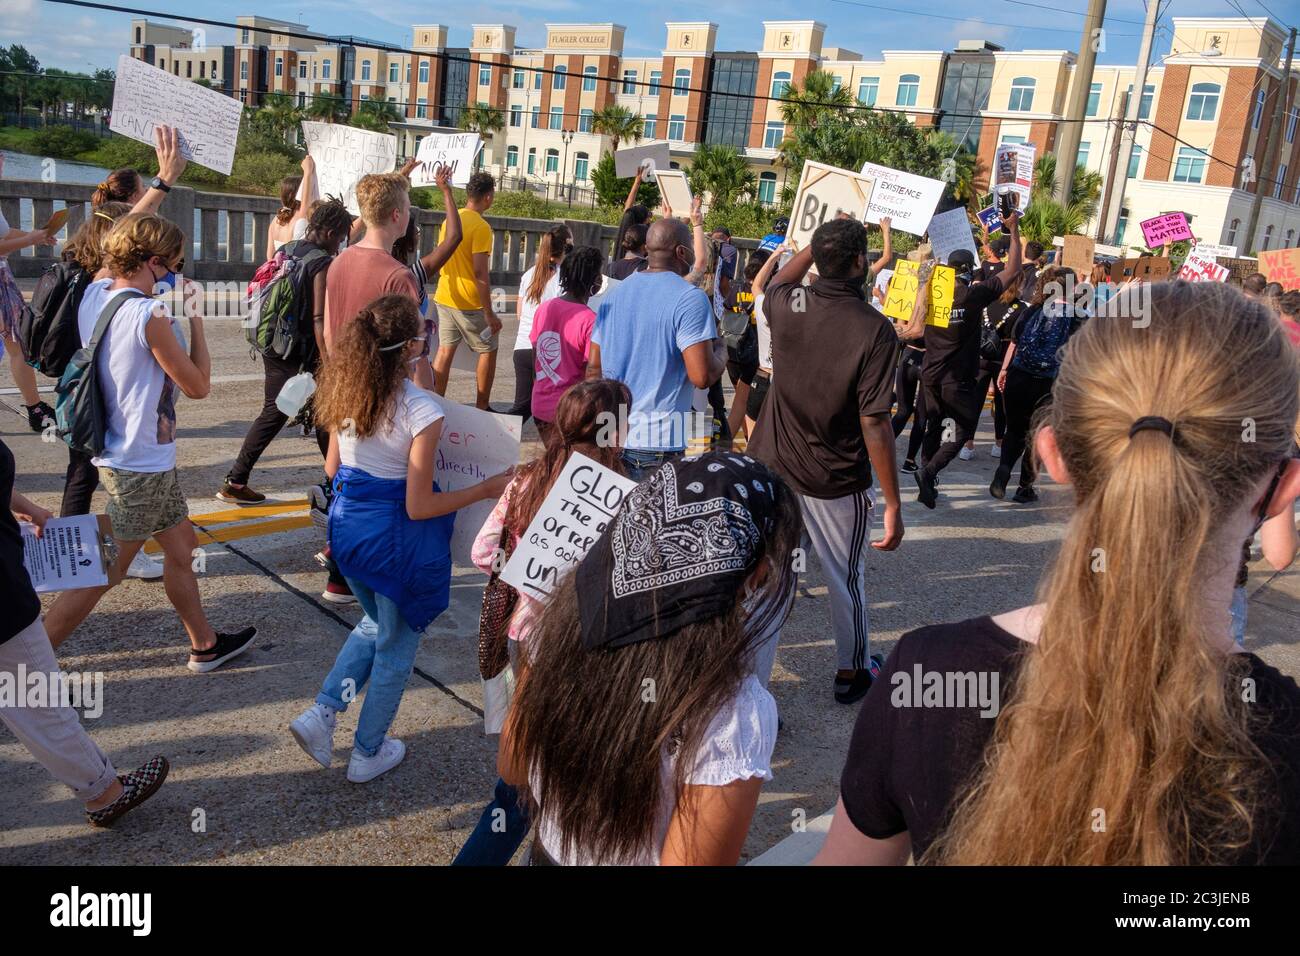 Rallye der schwarzen Menschenleben. St. Augustine, Florida Stockfoto